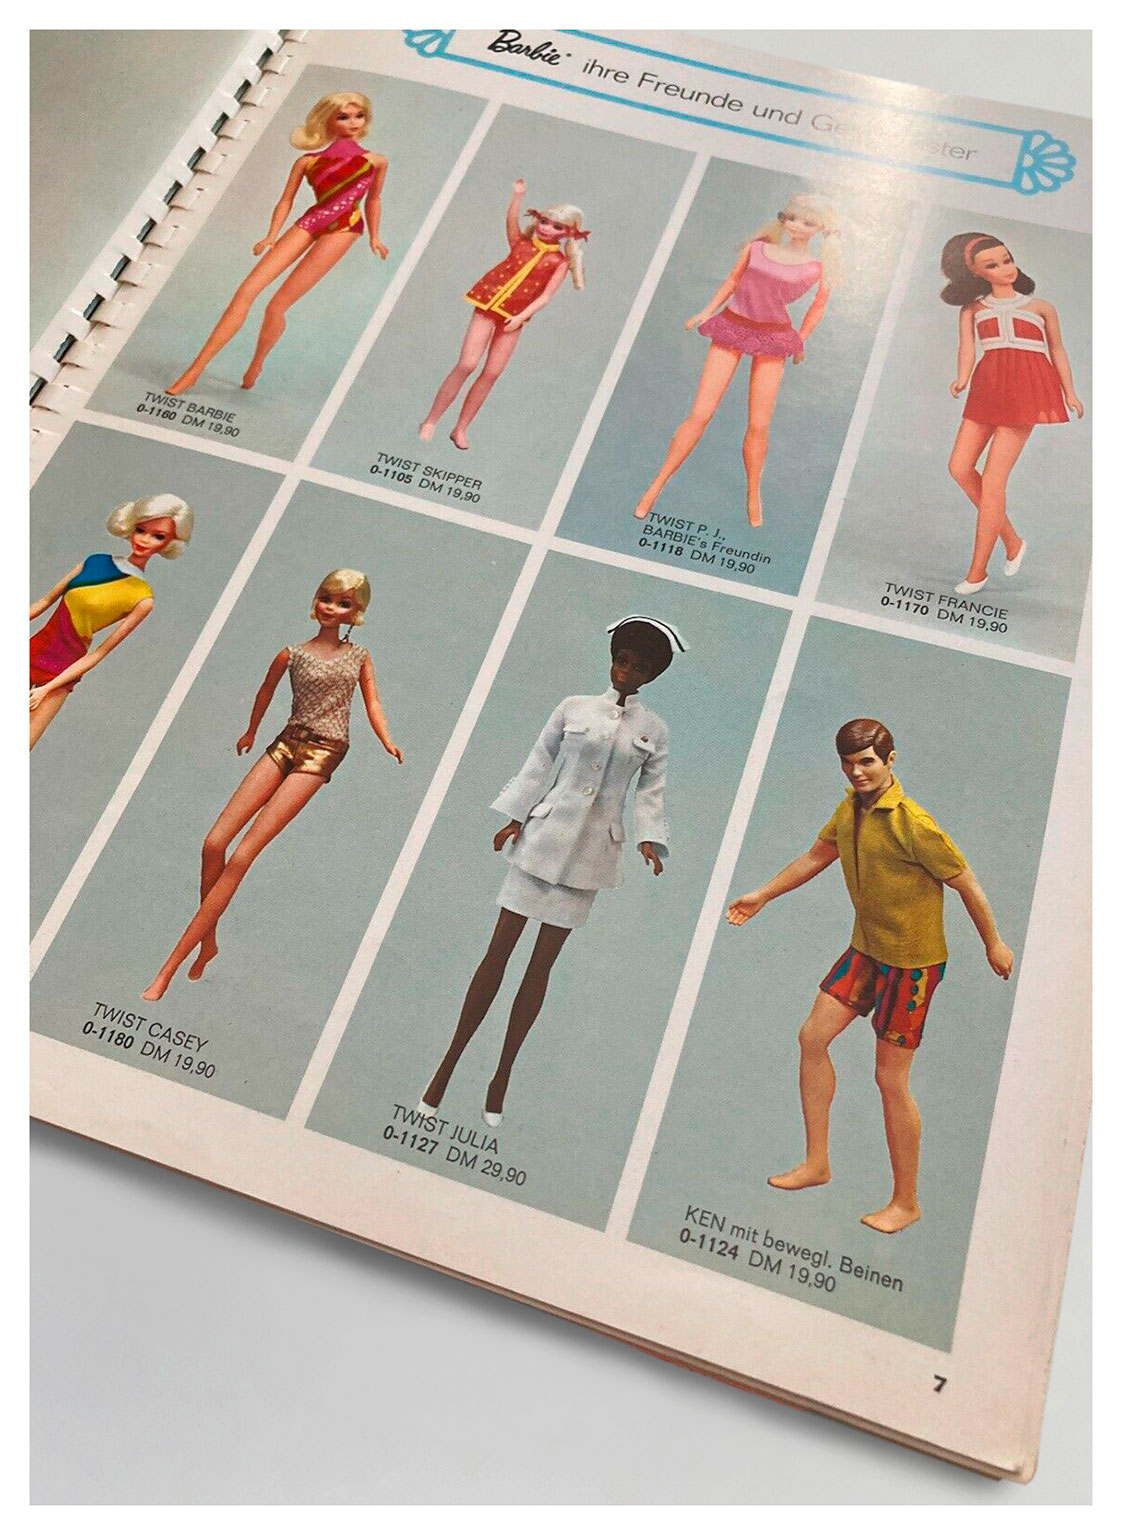 1971 German Mattel Spielzeug catalogue